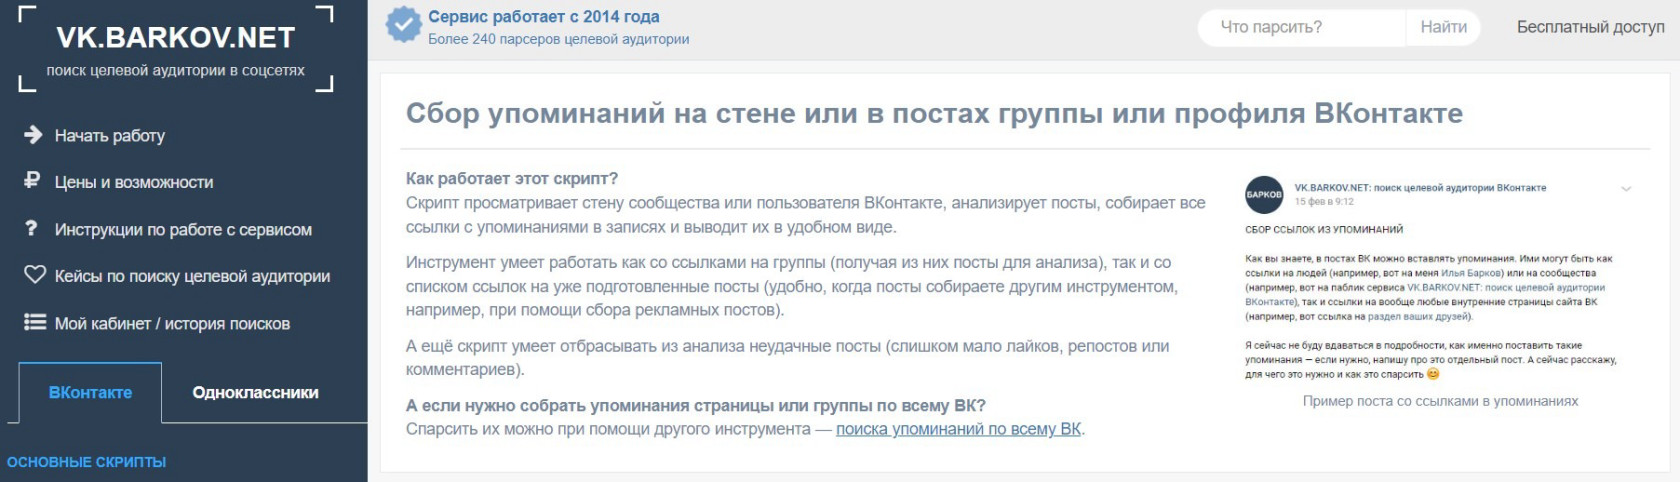 VK.BARKOV.NET